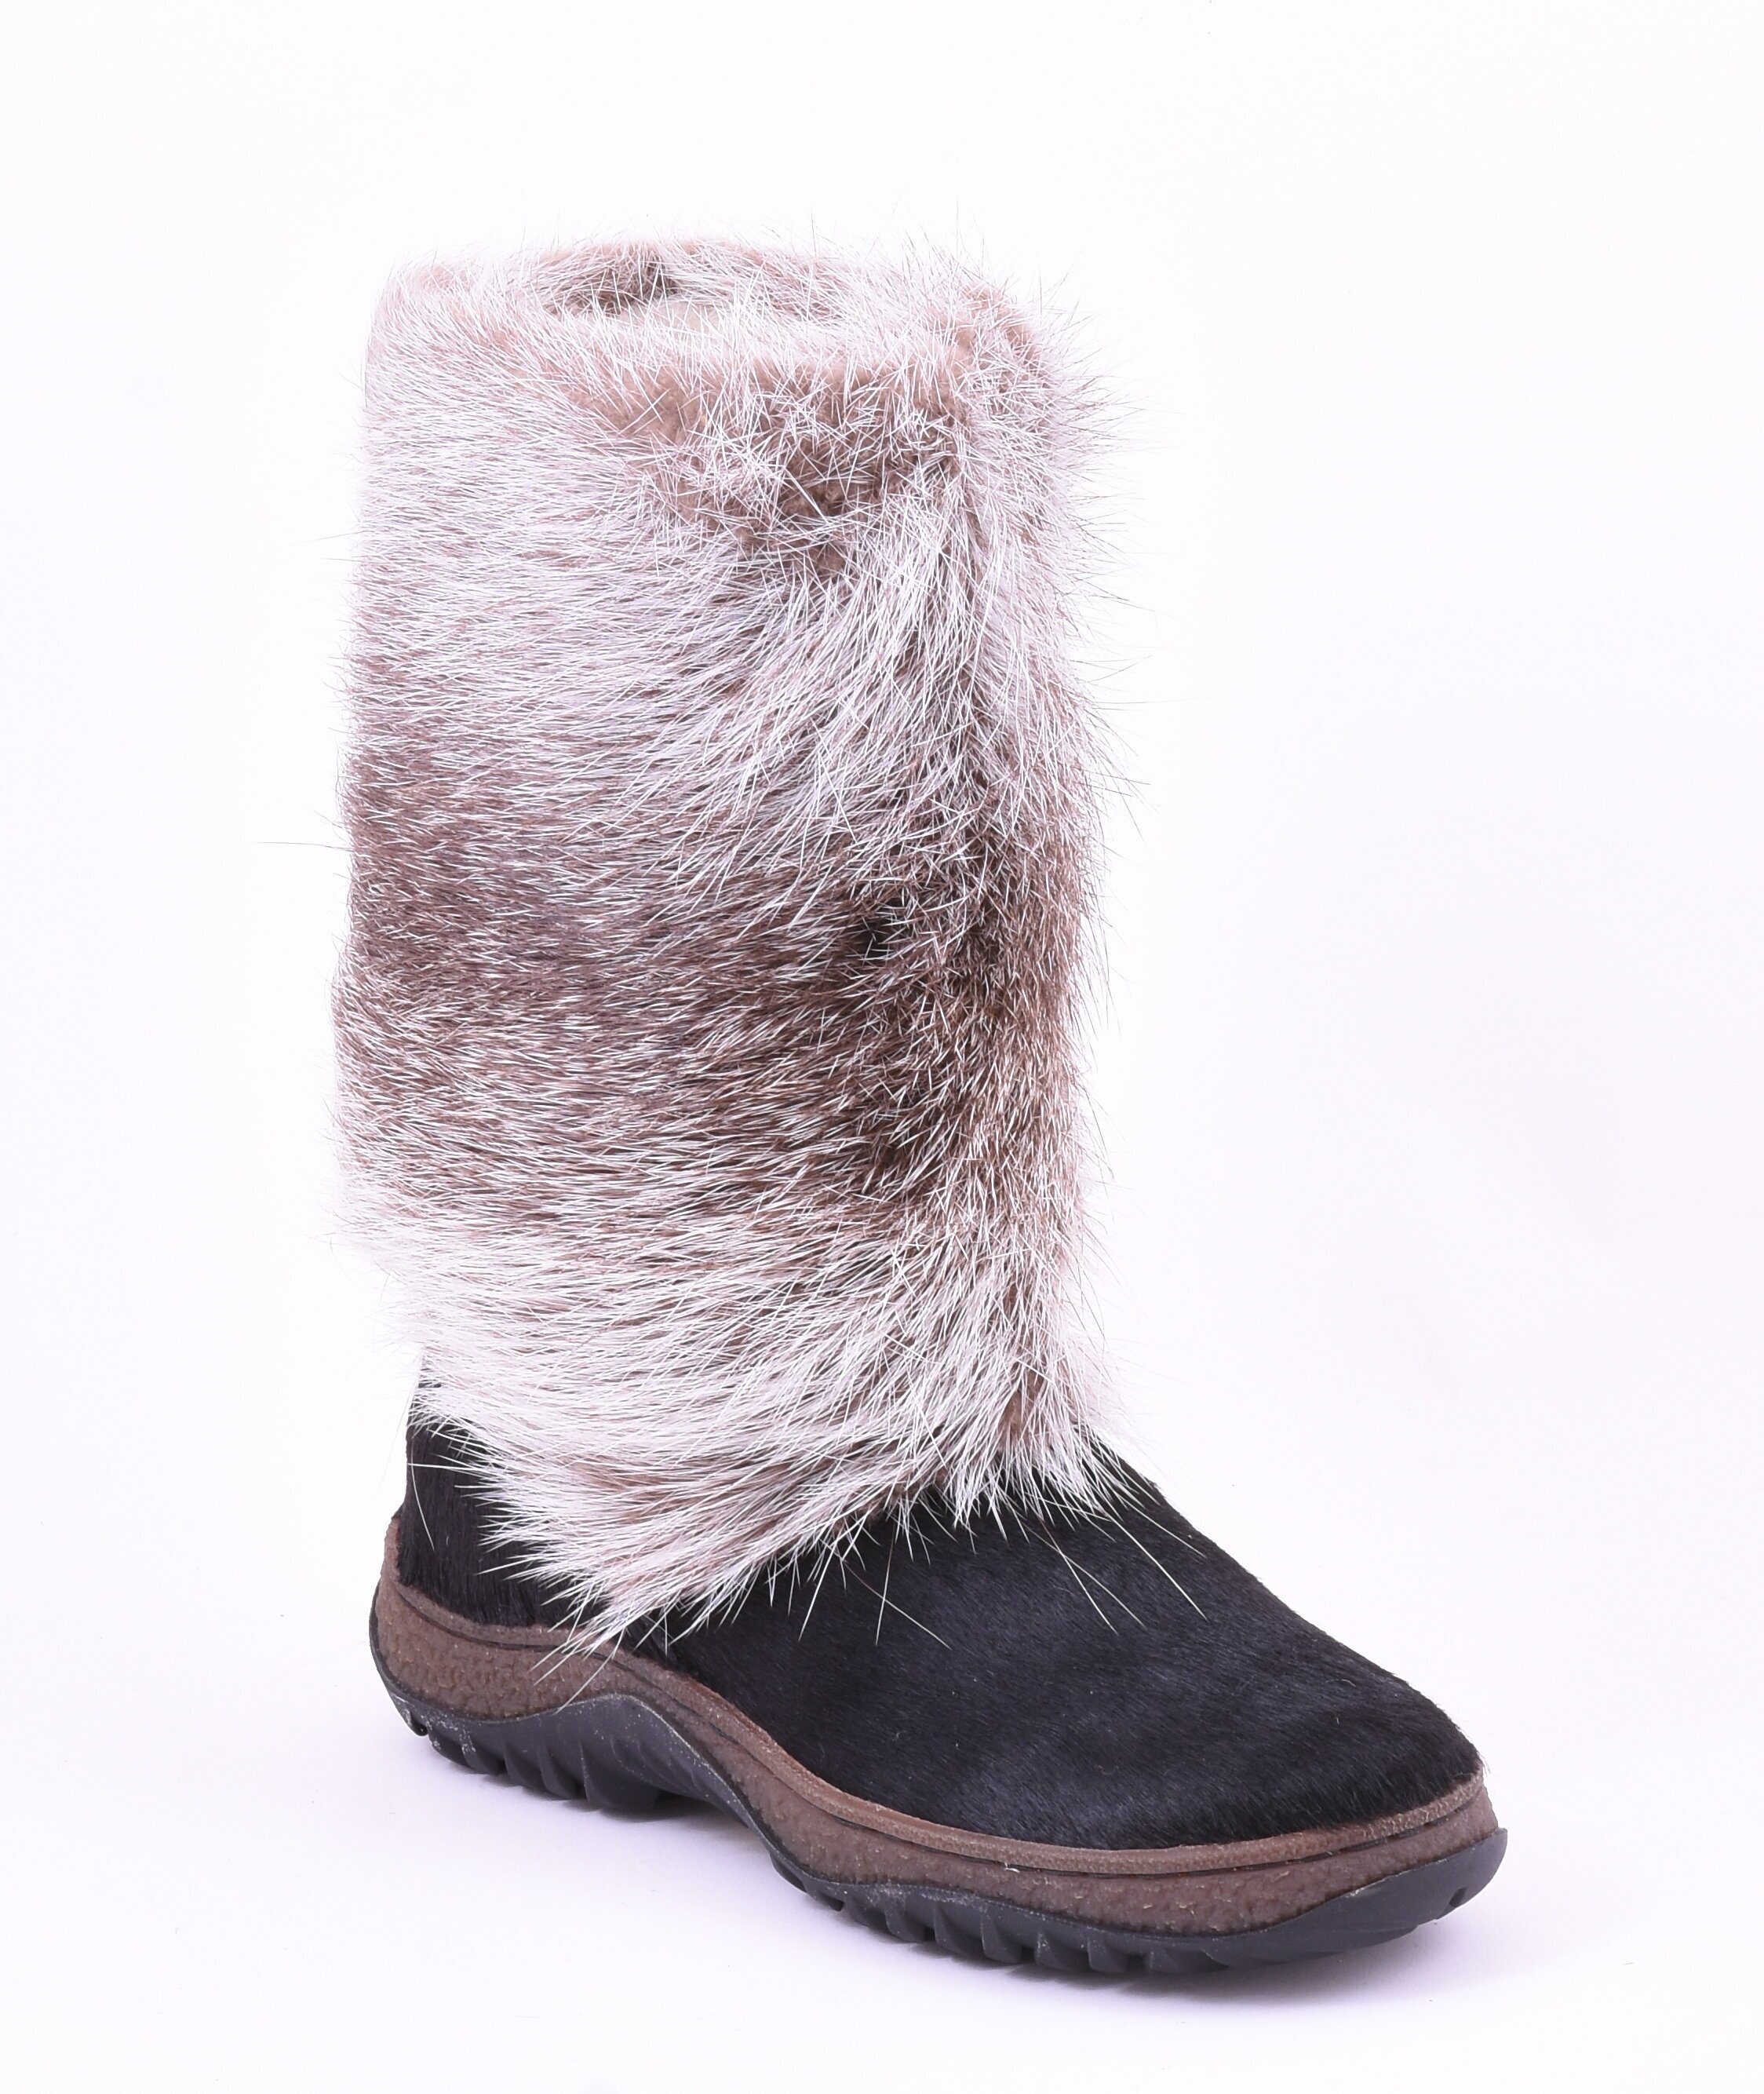 Обувь вида UGG для женщин, Moregor 25900117. цена | kaup24.ee